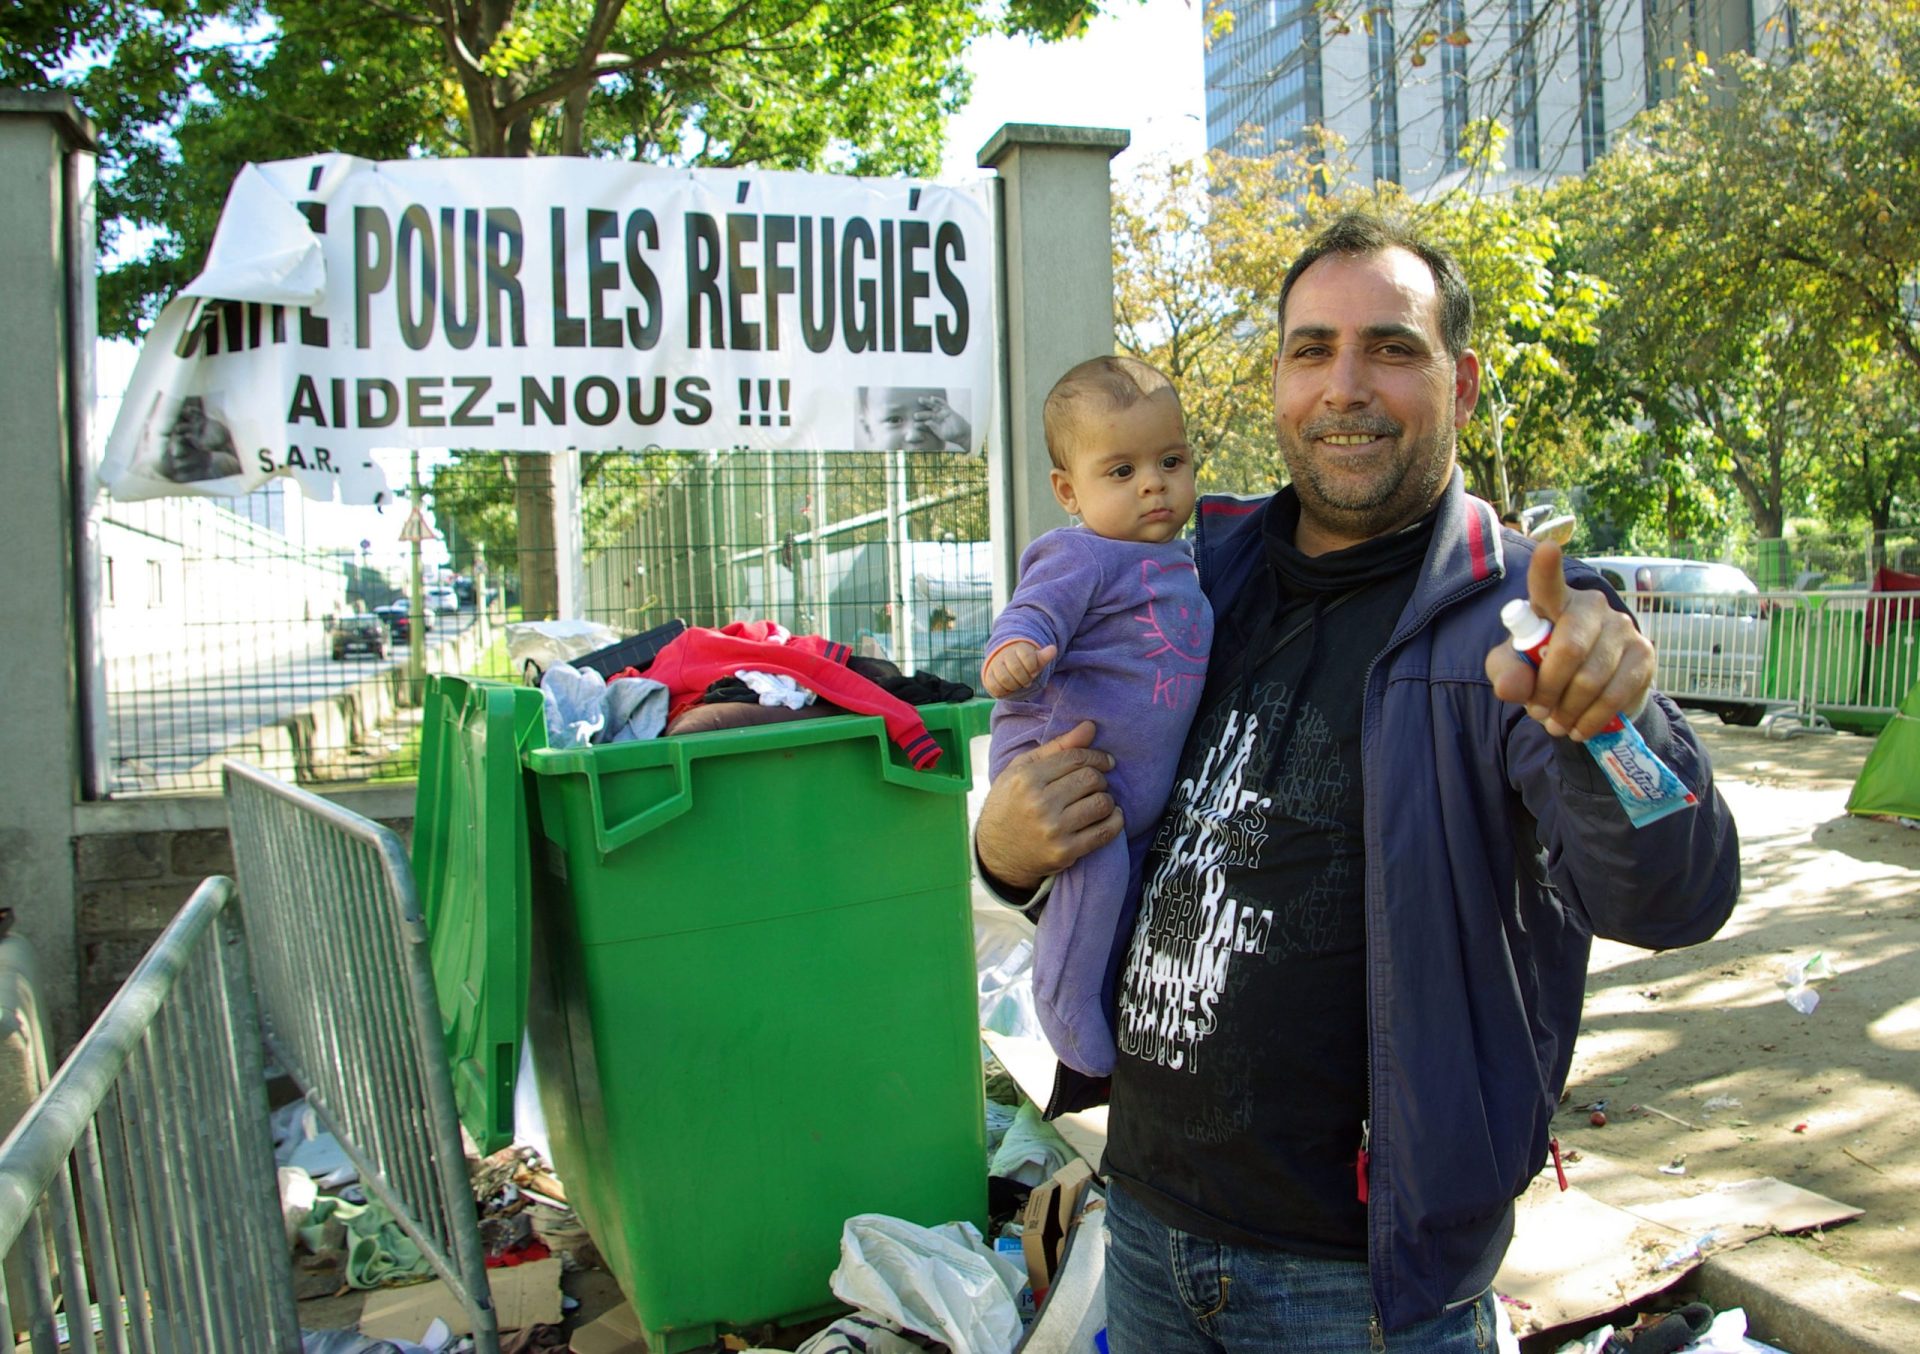 Os sonhos sírios num dos últimos acampamentos de refugiados em Paris